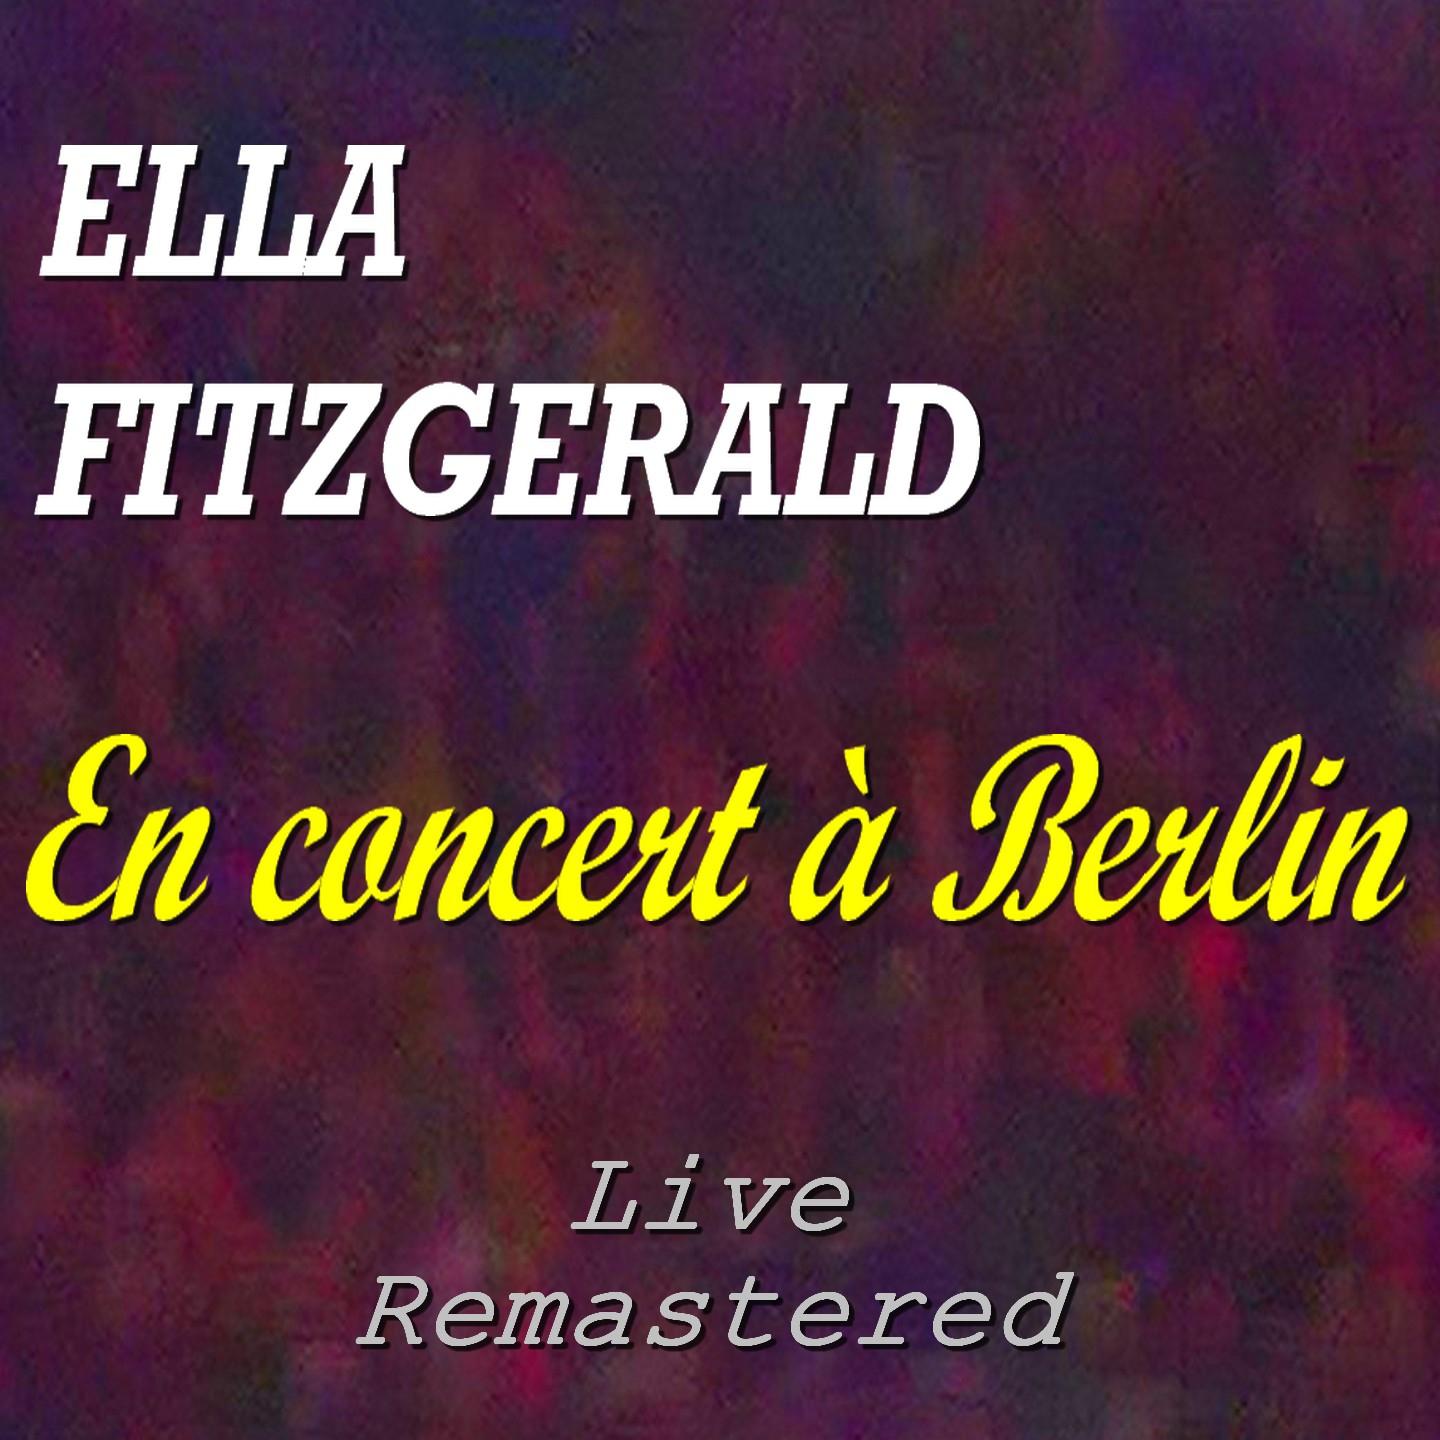 Ella Fitzgerald en concert a Berlin Live, Remastered